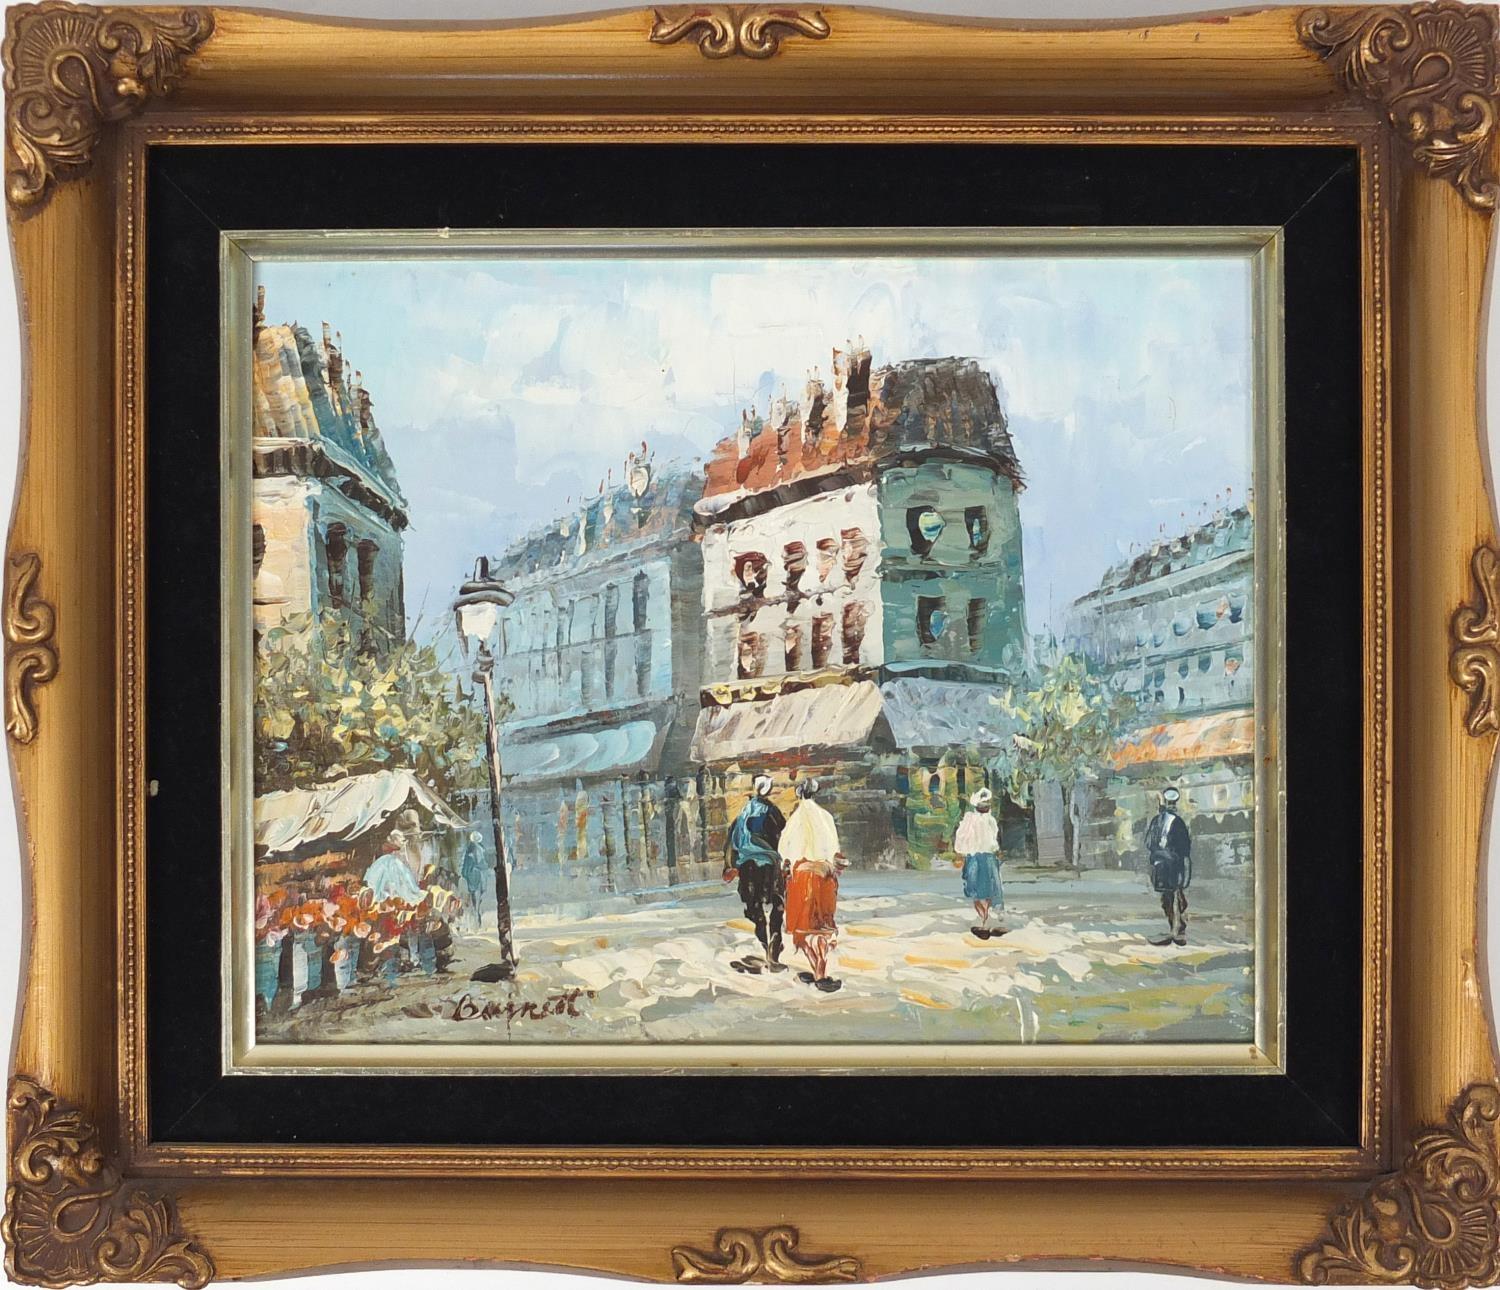 Burnett - Parisian street scene, oil onto canvas, framed, 24cm x 19cm : For Further Condition - Image 2 of 4